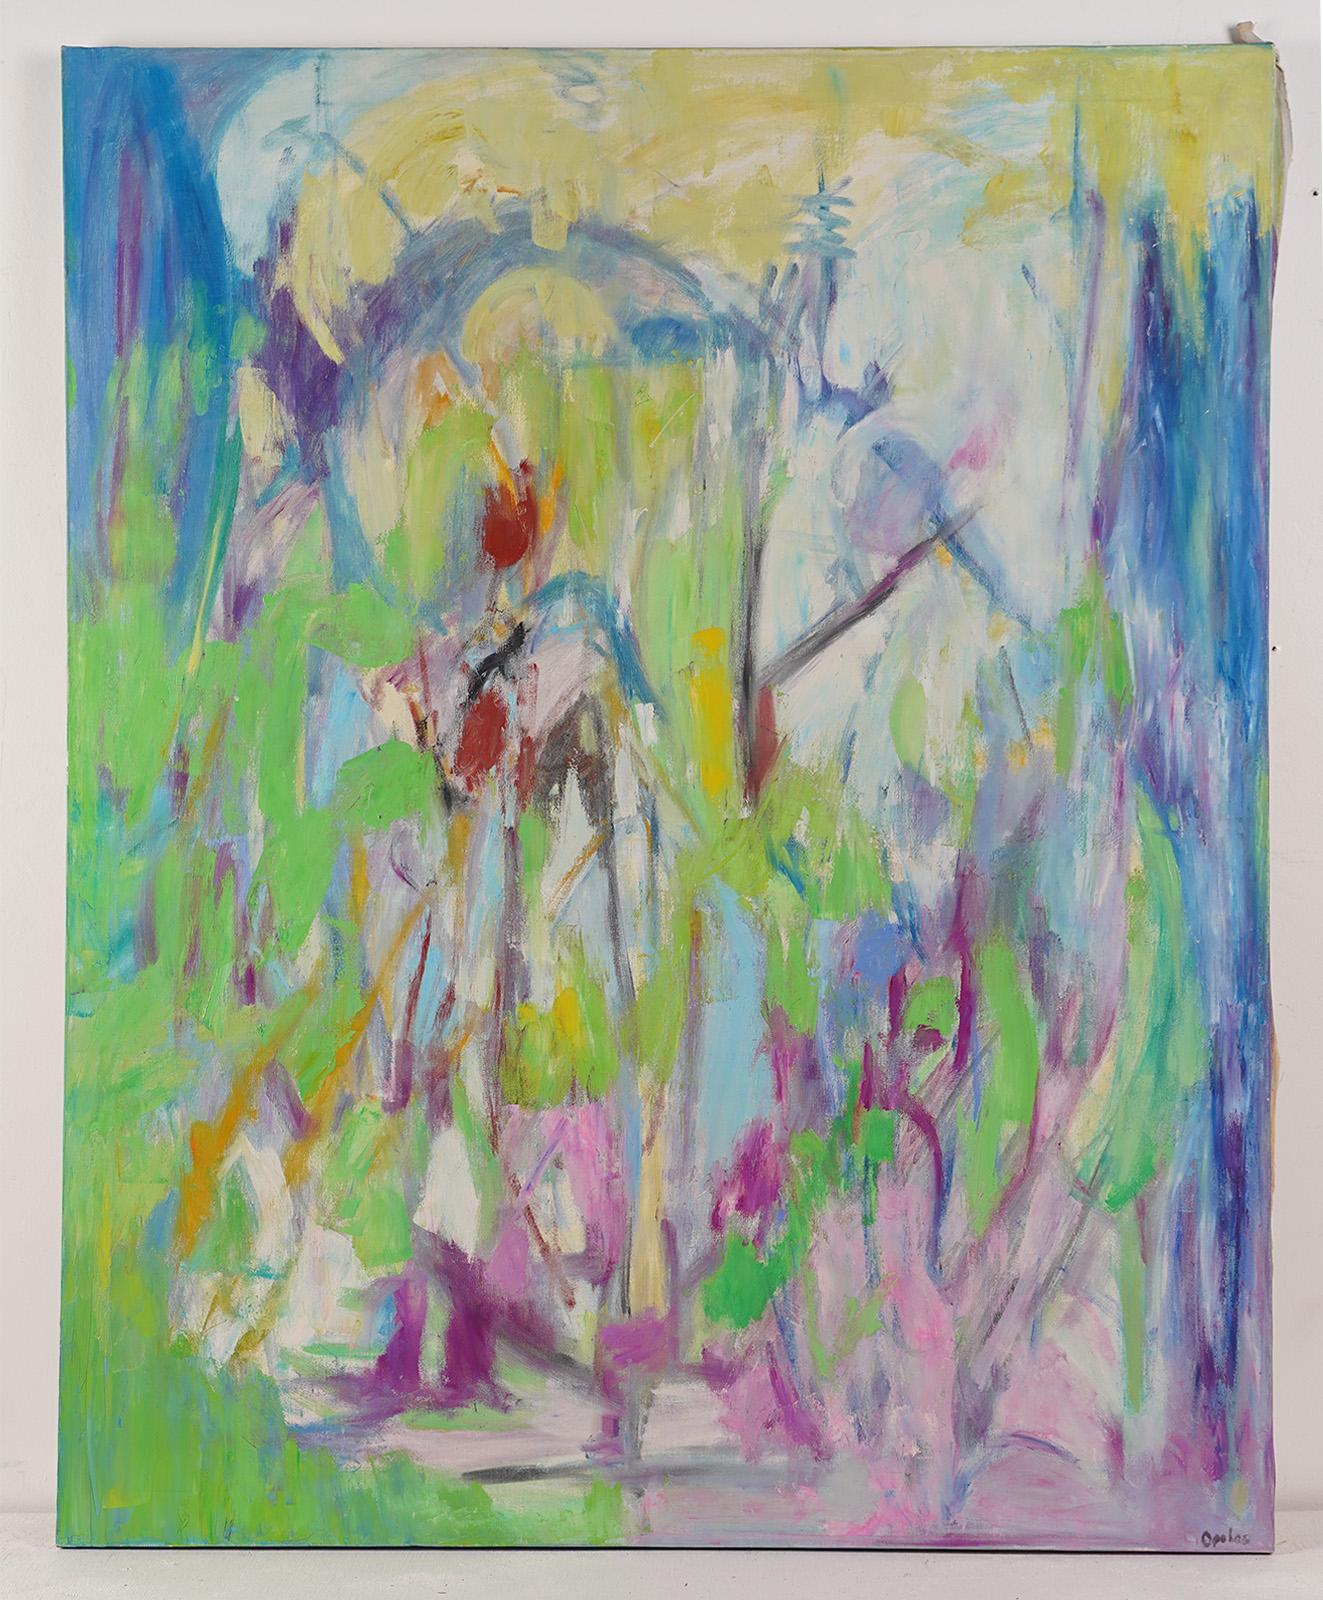 Antikes weibliches abstraktes expressionistisches Ölgemälde, signiert, Große Landschaft  (Abstrakter Expressionismus), Painting, von Christine Opolus